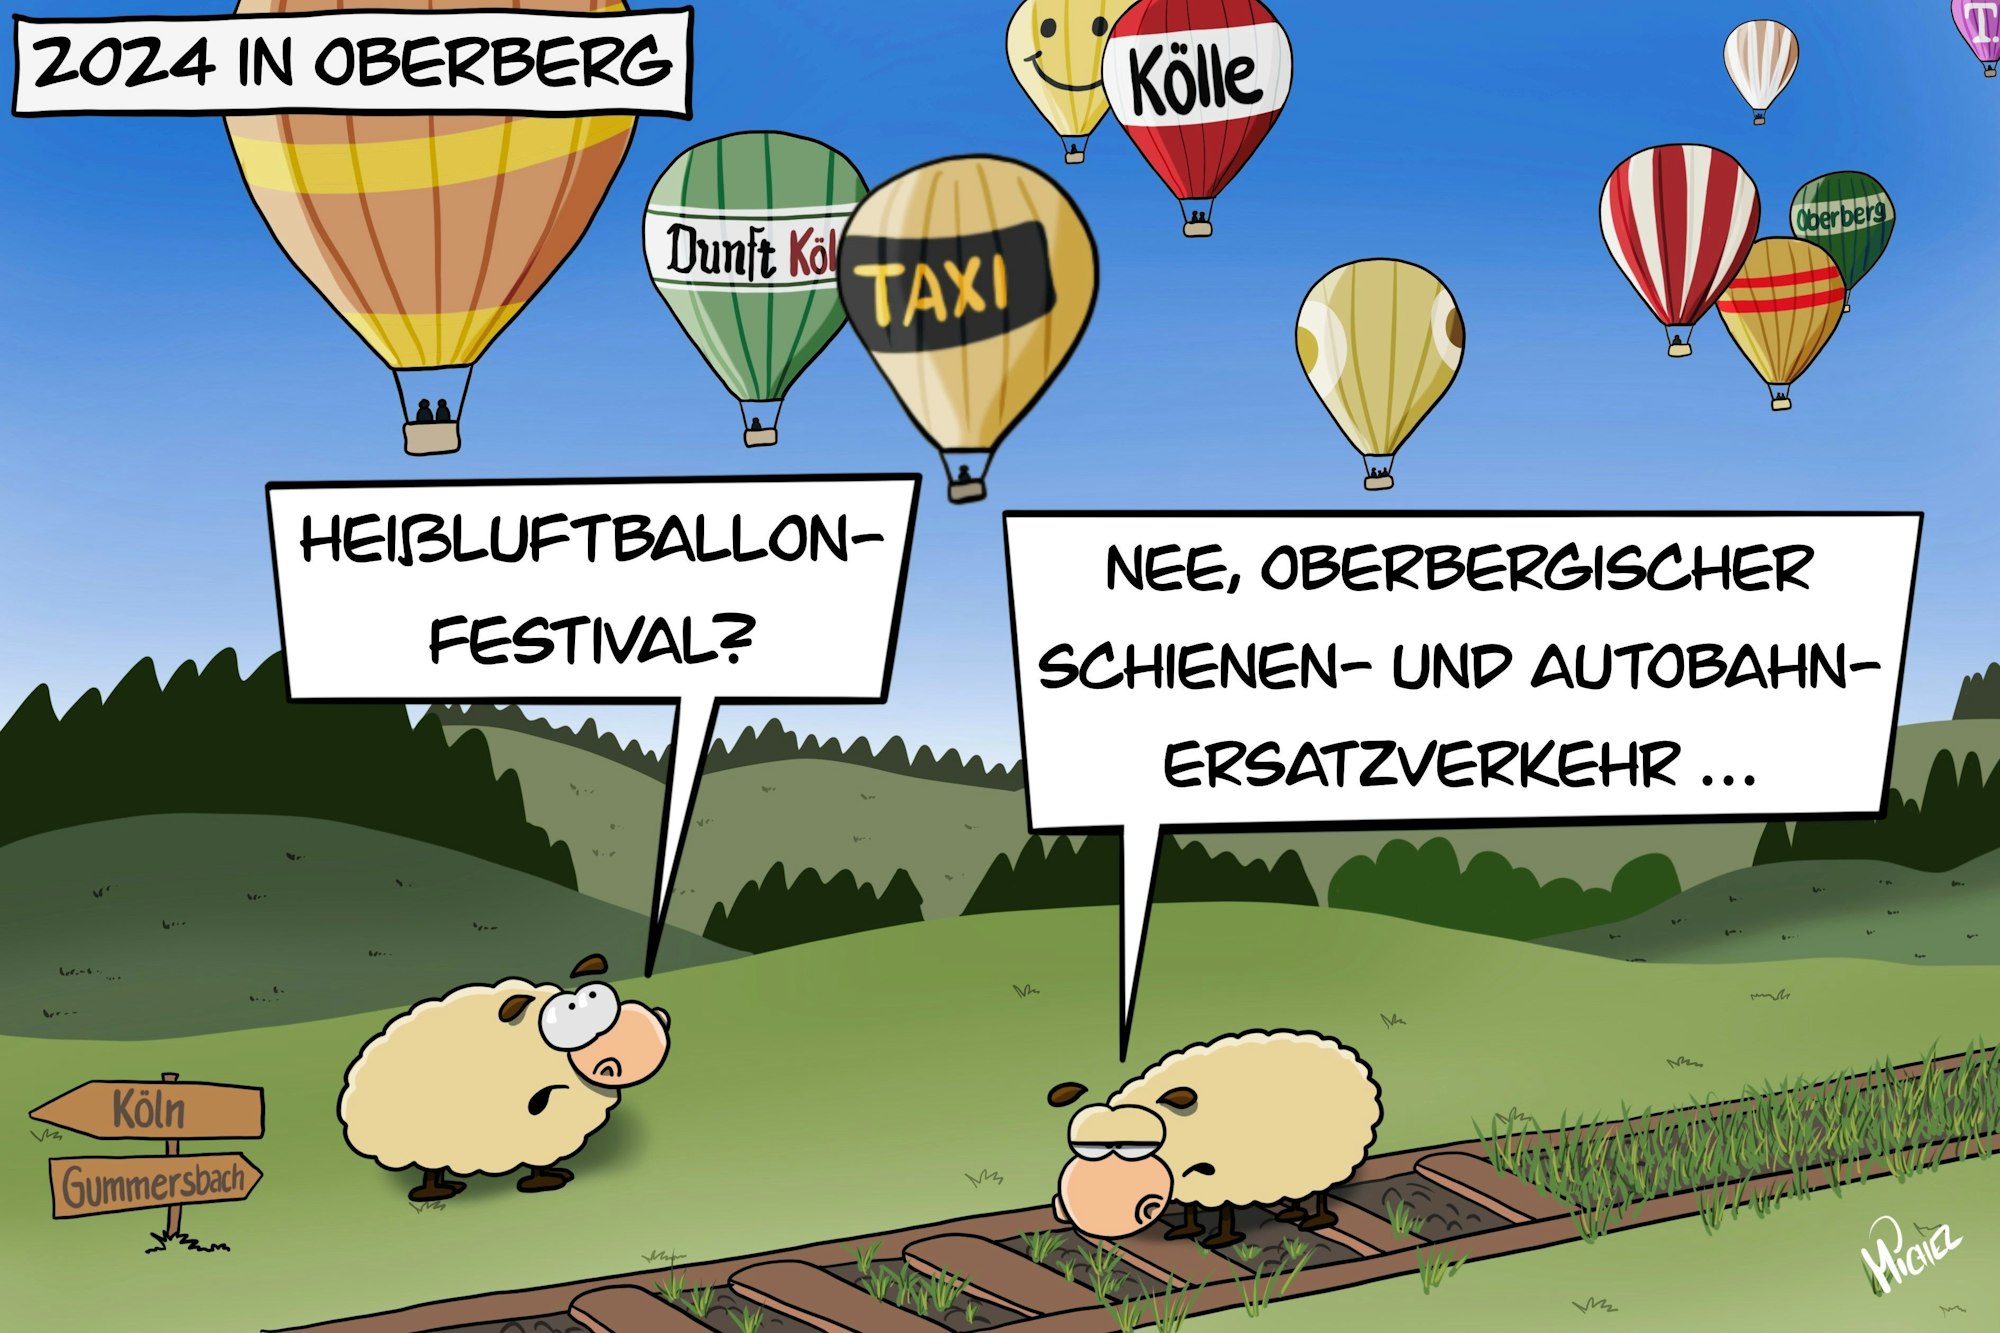 Zwei Schafe stehen auf einem zugewachsenem Gleis, über ihnen fahren Heißluftballone. Das eine fragt: „Heißluftballon-Festival?“ Das andere antwortet: „Nee, oberbergischer Schienen- und Autobahn-Ersatzverkehr.“